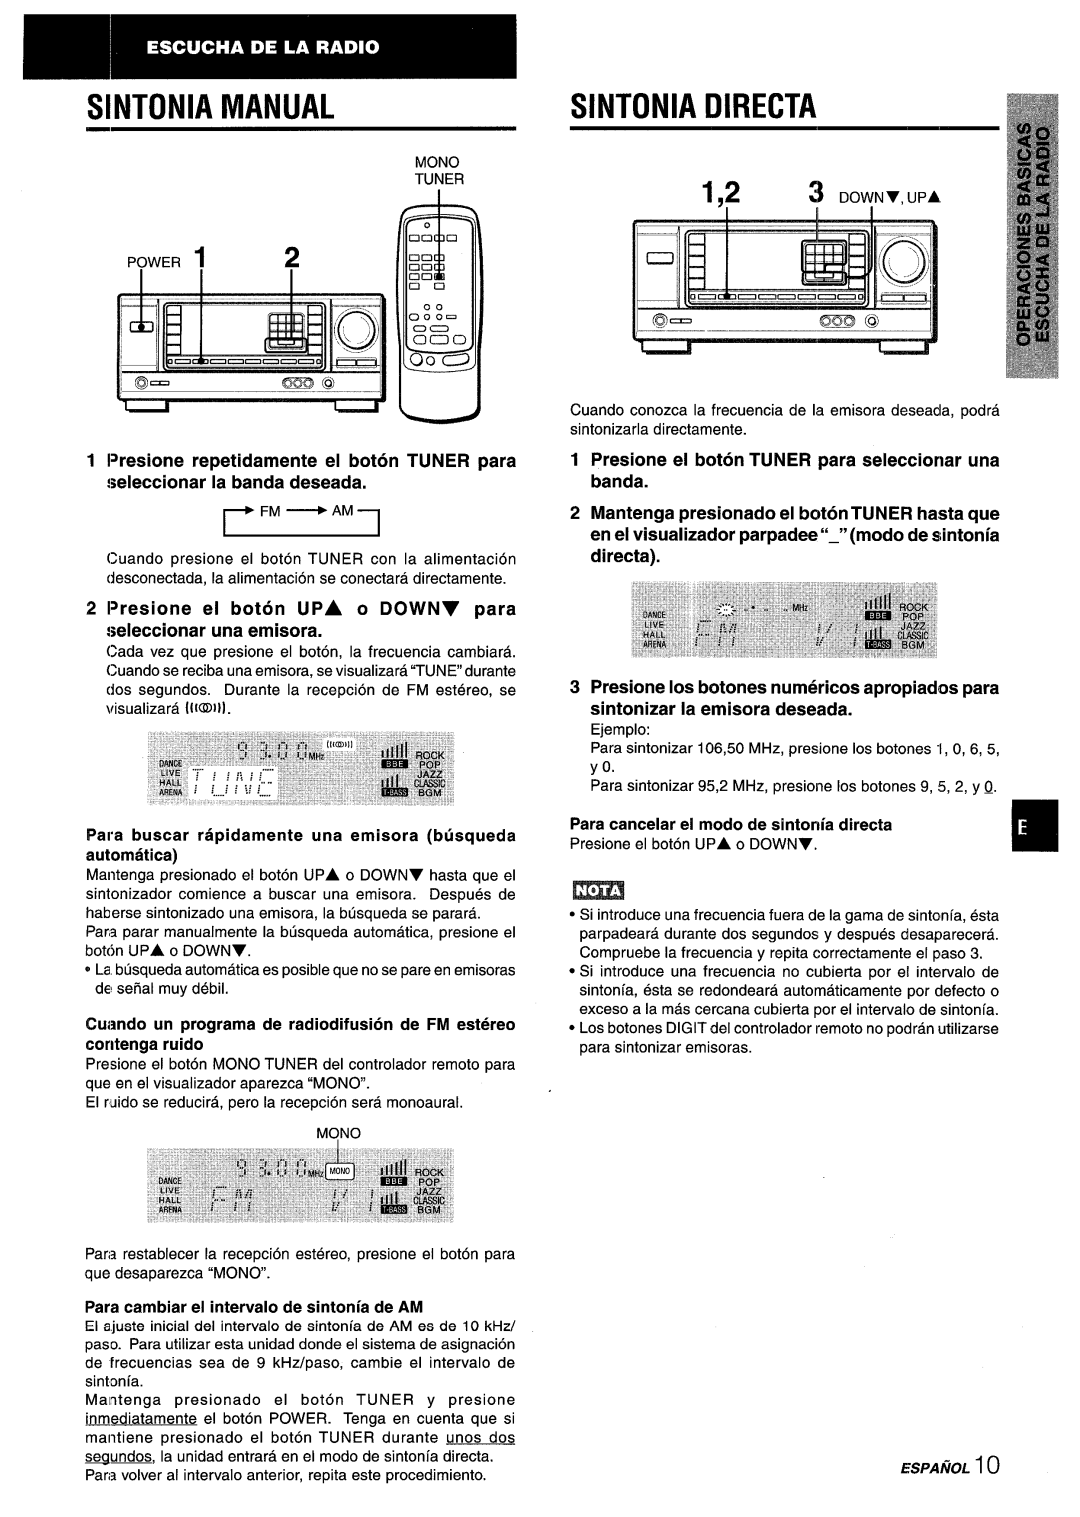 Aiwa AV-X220 manual Sintonia Directa, Presione repetidamente el boton TUNER para, seleccionarla bandadeseada 